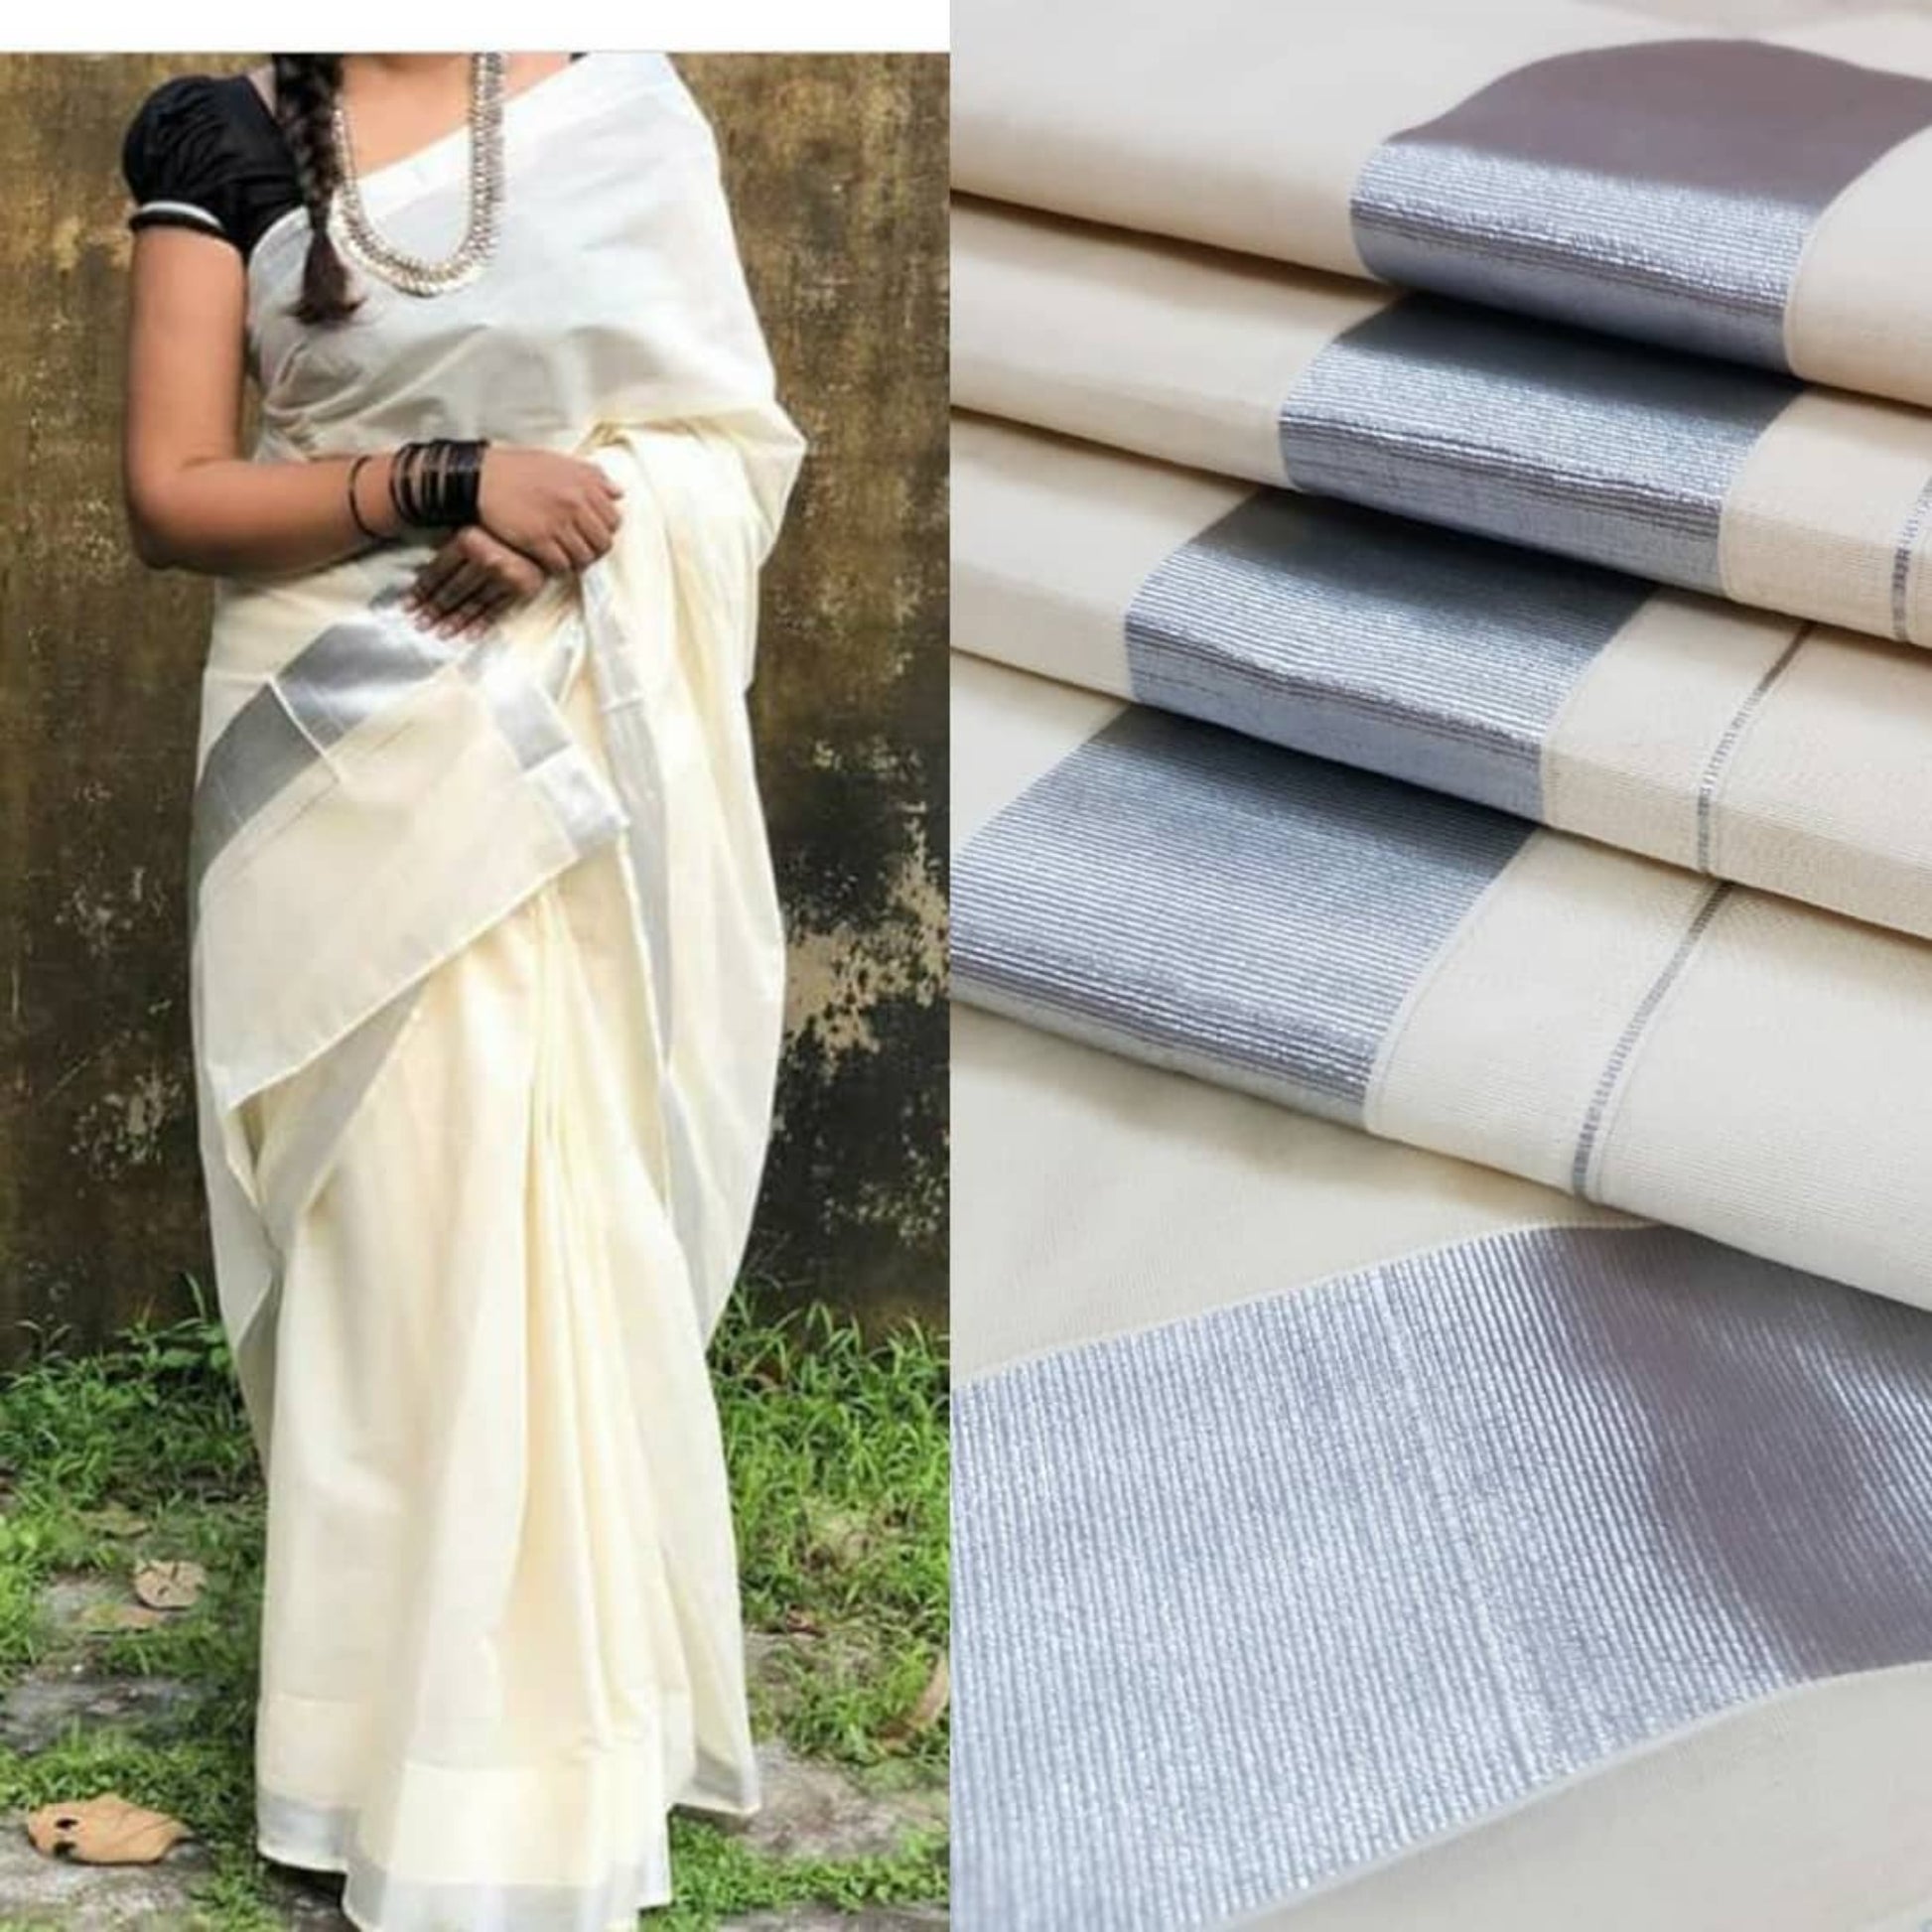 Kerala kasavu cotton sarees